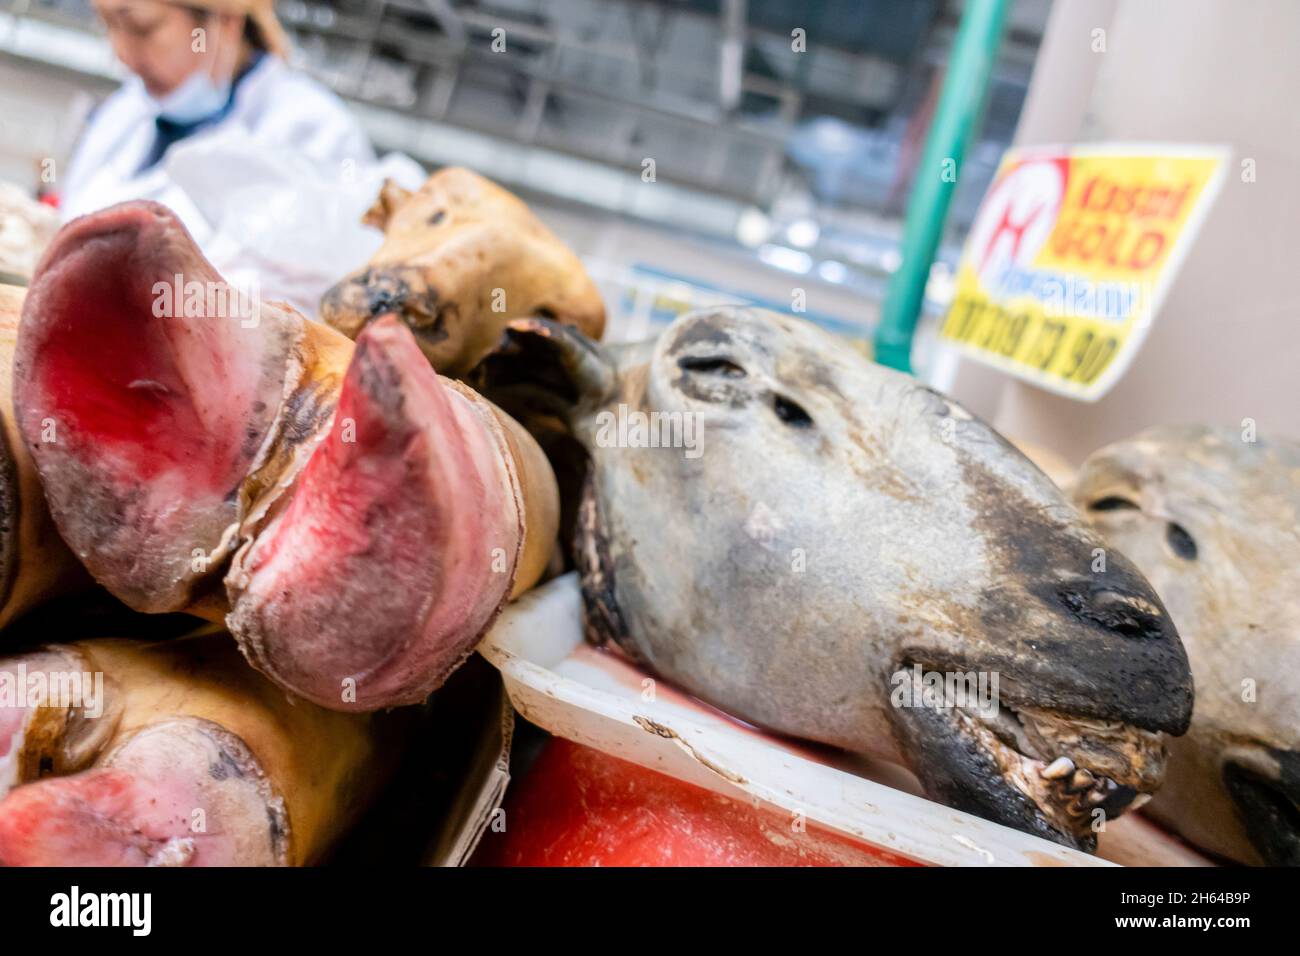 Schafskopf und Hufe werden auf dem Altyn Orda Markt, dem größten Markt in Almaty, Kasachstan, verkauft Stockfoto